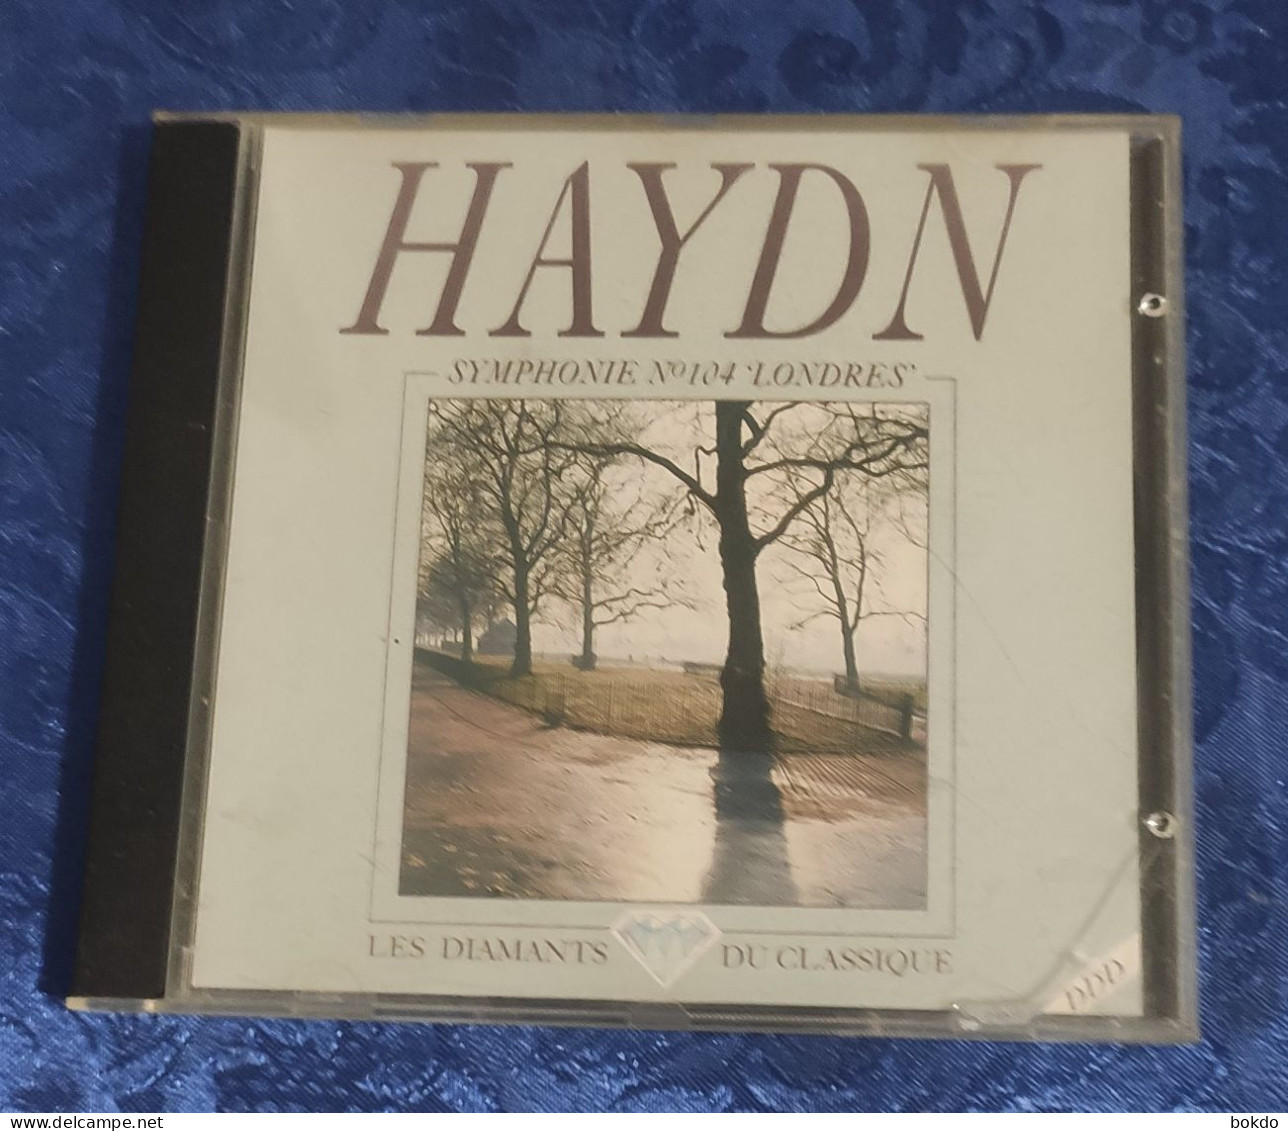 HAYDN - Symphonie N° 104 "londres" - Klassik